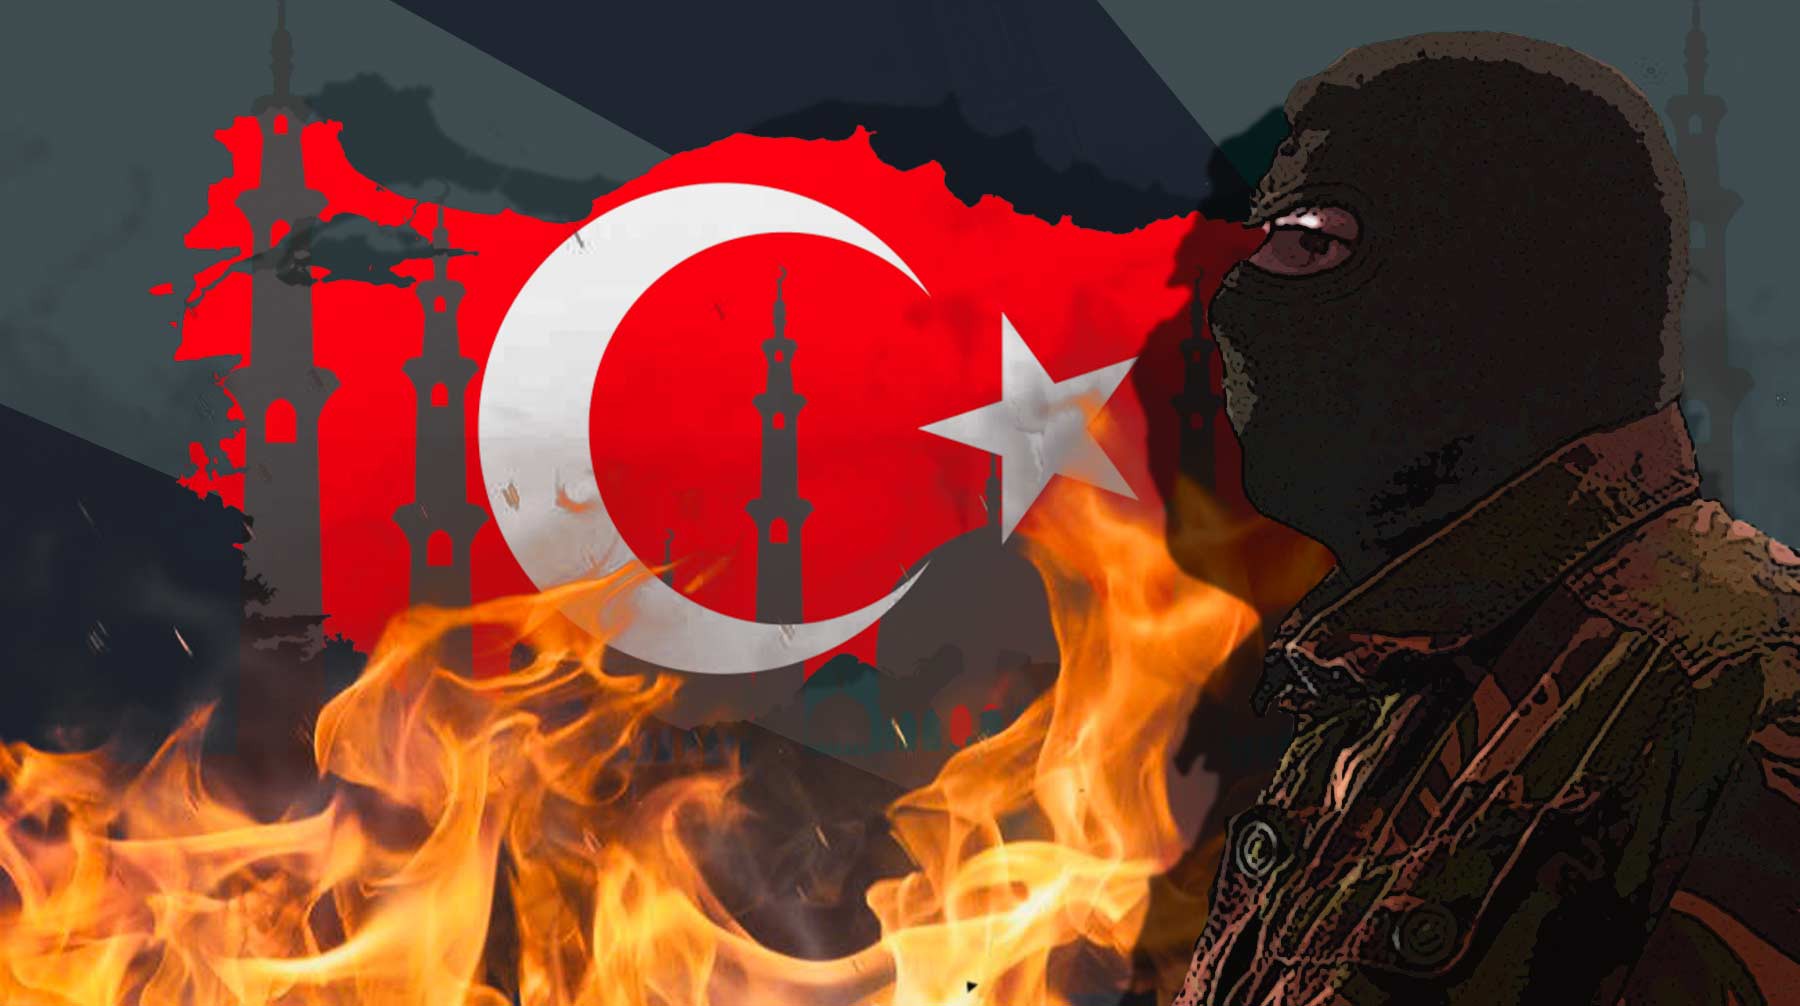 Dailystorm - Против чего борются и за кого выступают «Дети огня». Все о новой группировке, спалившей курорты Турции